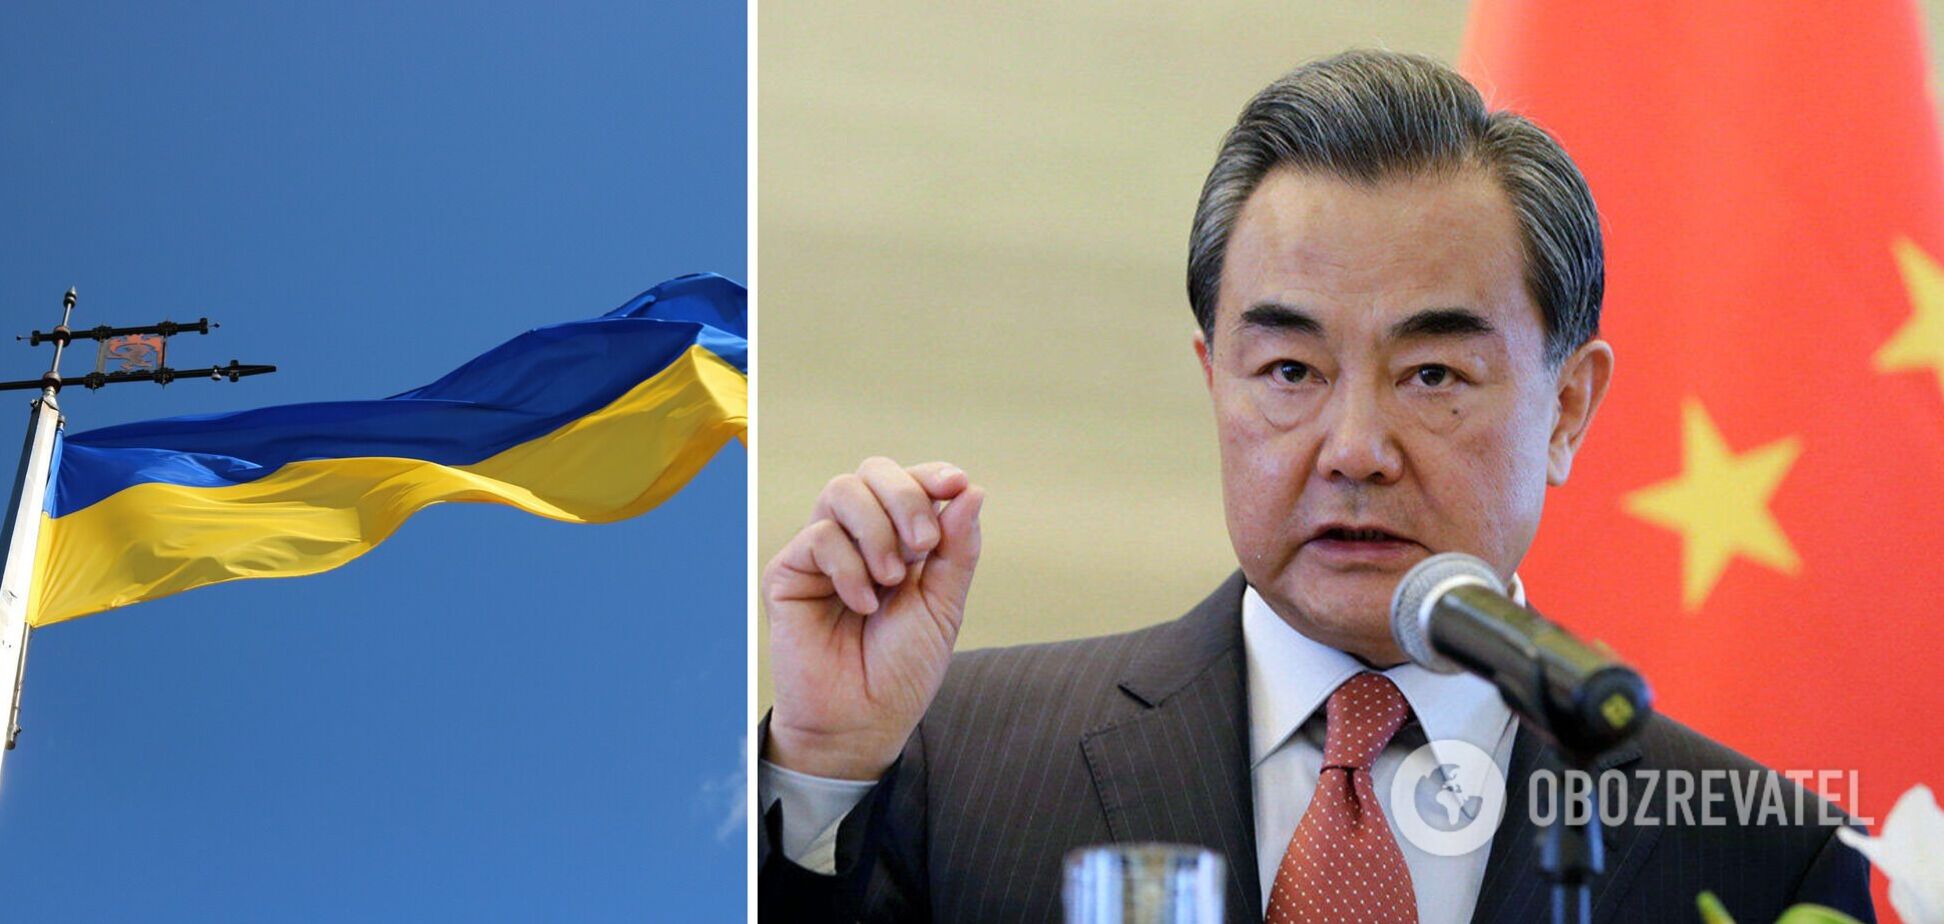 Китай встал на сторону Украины, поддержав ее территориальную целостность